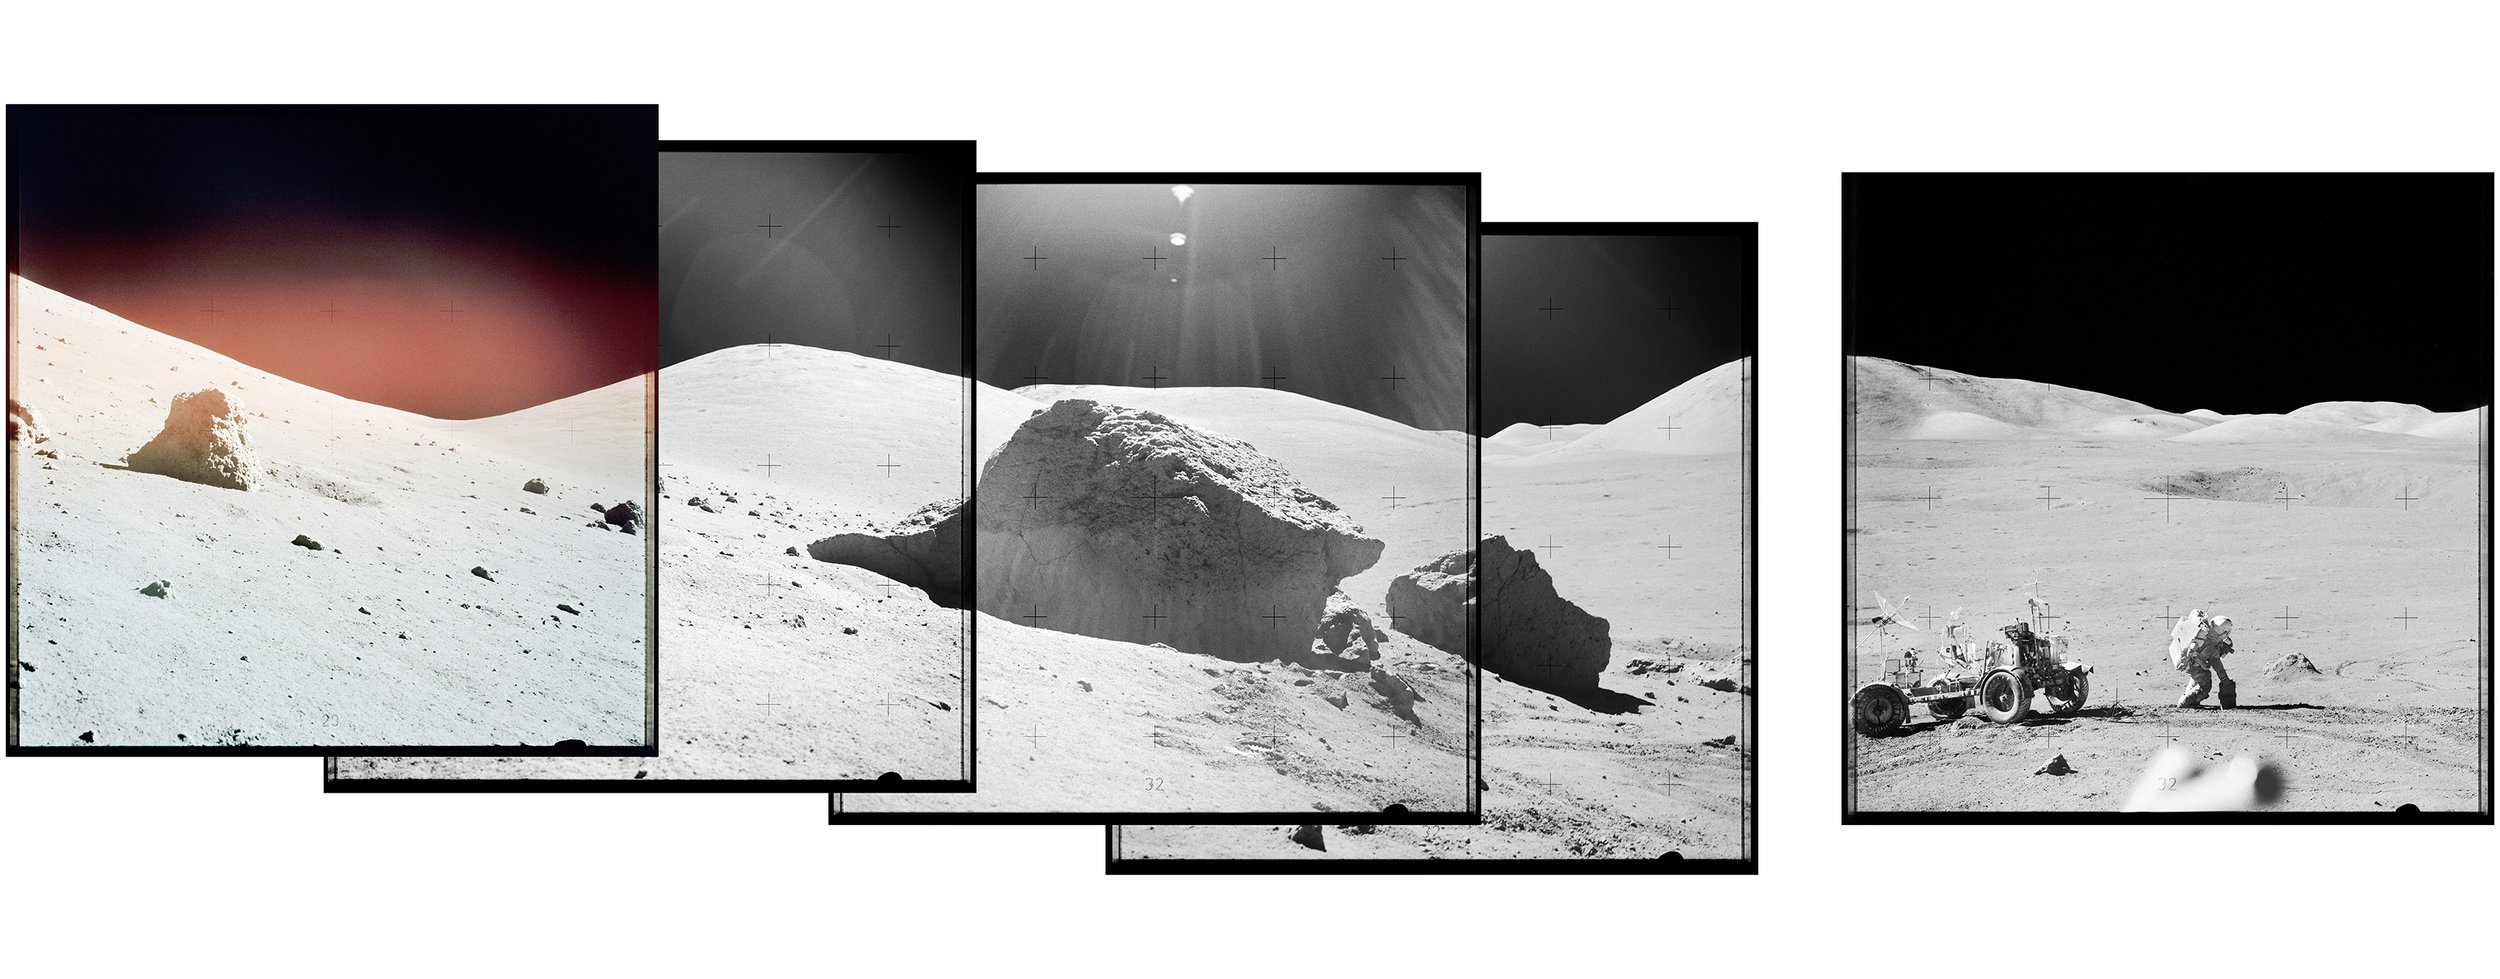  Taurus Mountains, LRV and astronaut (175x60)Apollo 17 Magazine 141/E & 141/L - NASA photographs 1972 